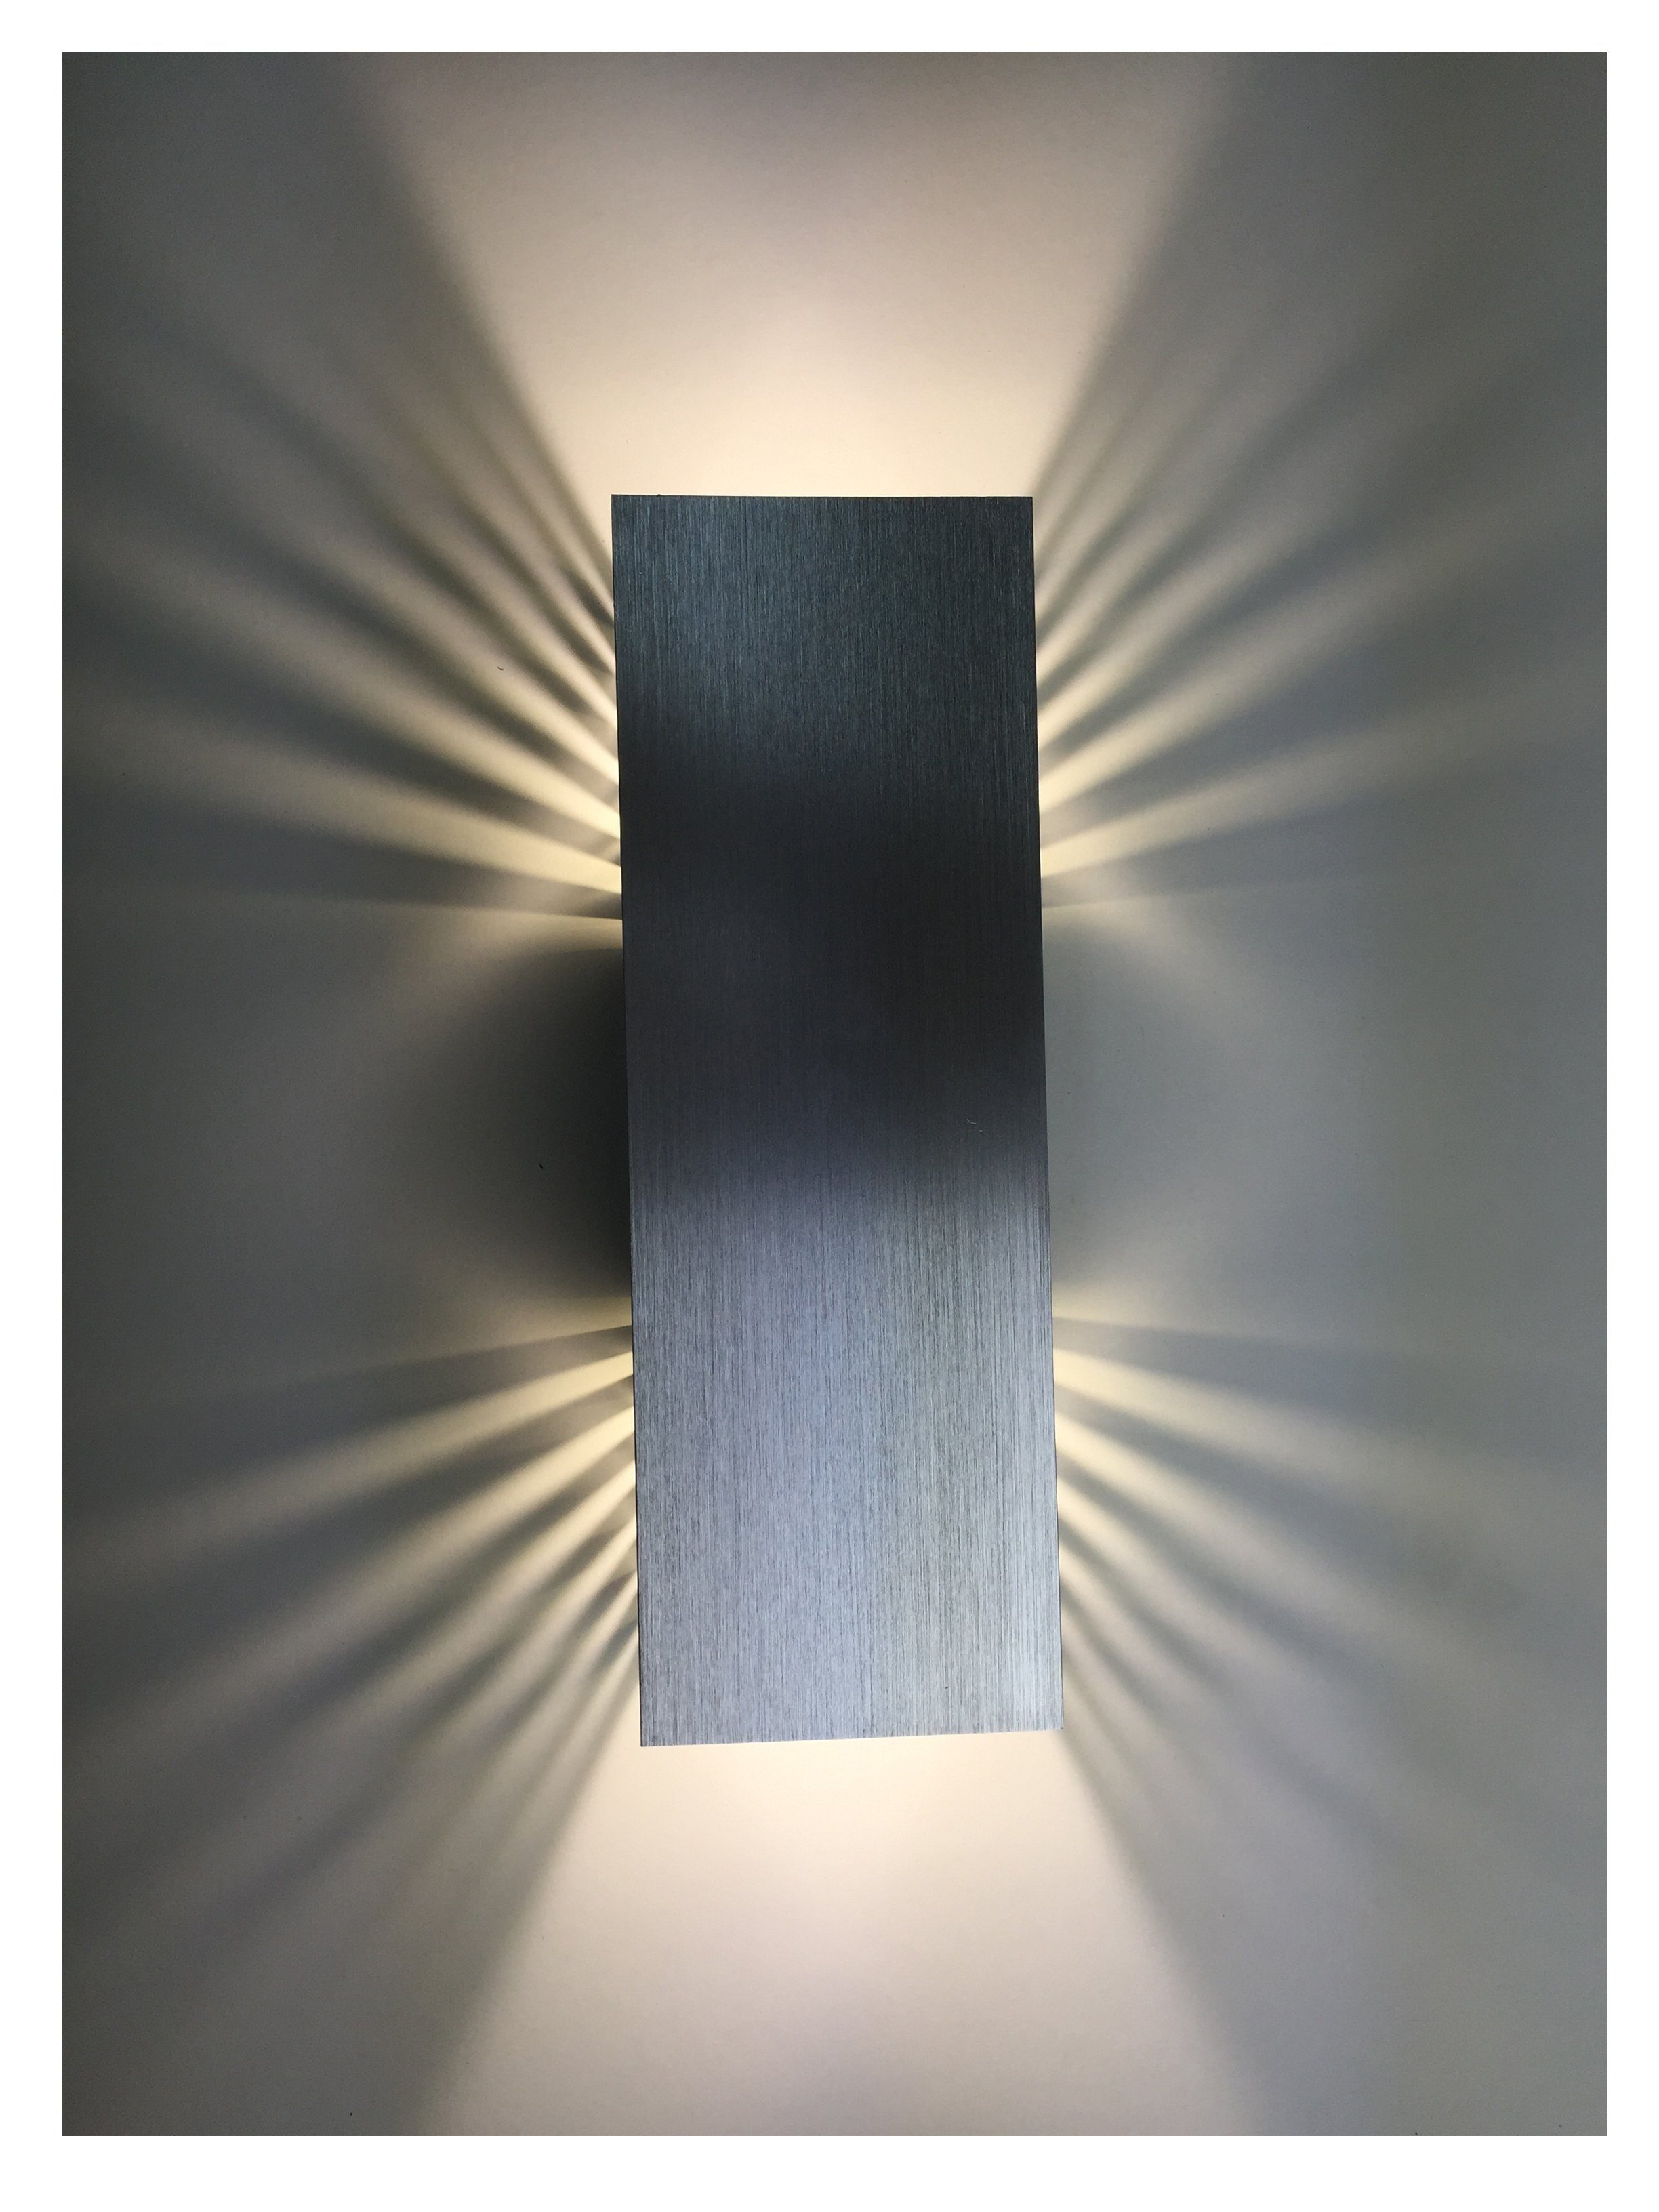 SpiceLED LED Wandleuchte ShineLED, Weiß (4200 K), LED fest integriert, Warmweiß, 30 Watt, Lichtfarbe weiß, dimmbar, indirekte Beleuchtung mit Schatteneffekt, Up & Down Licht